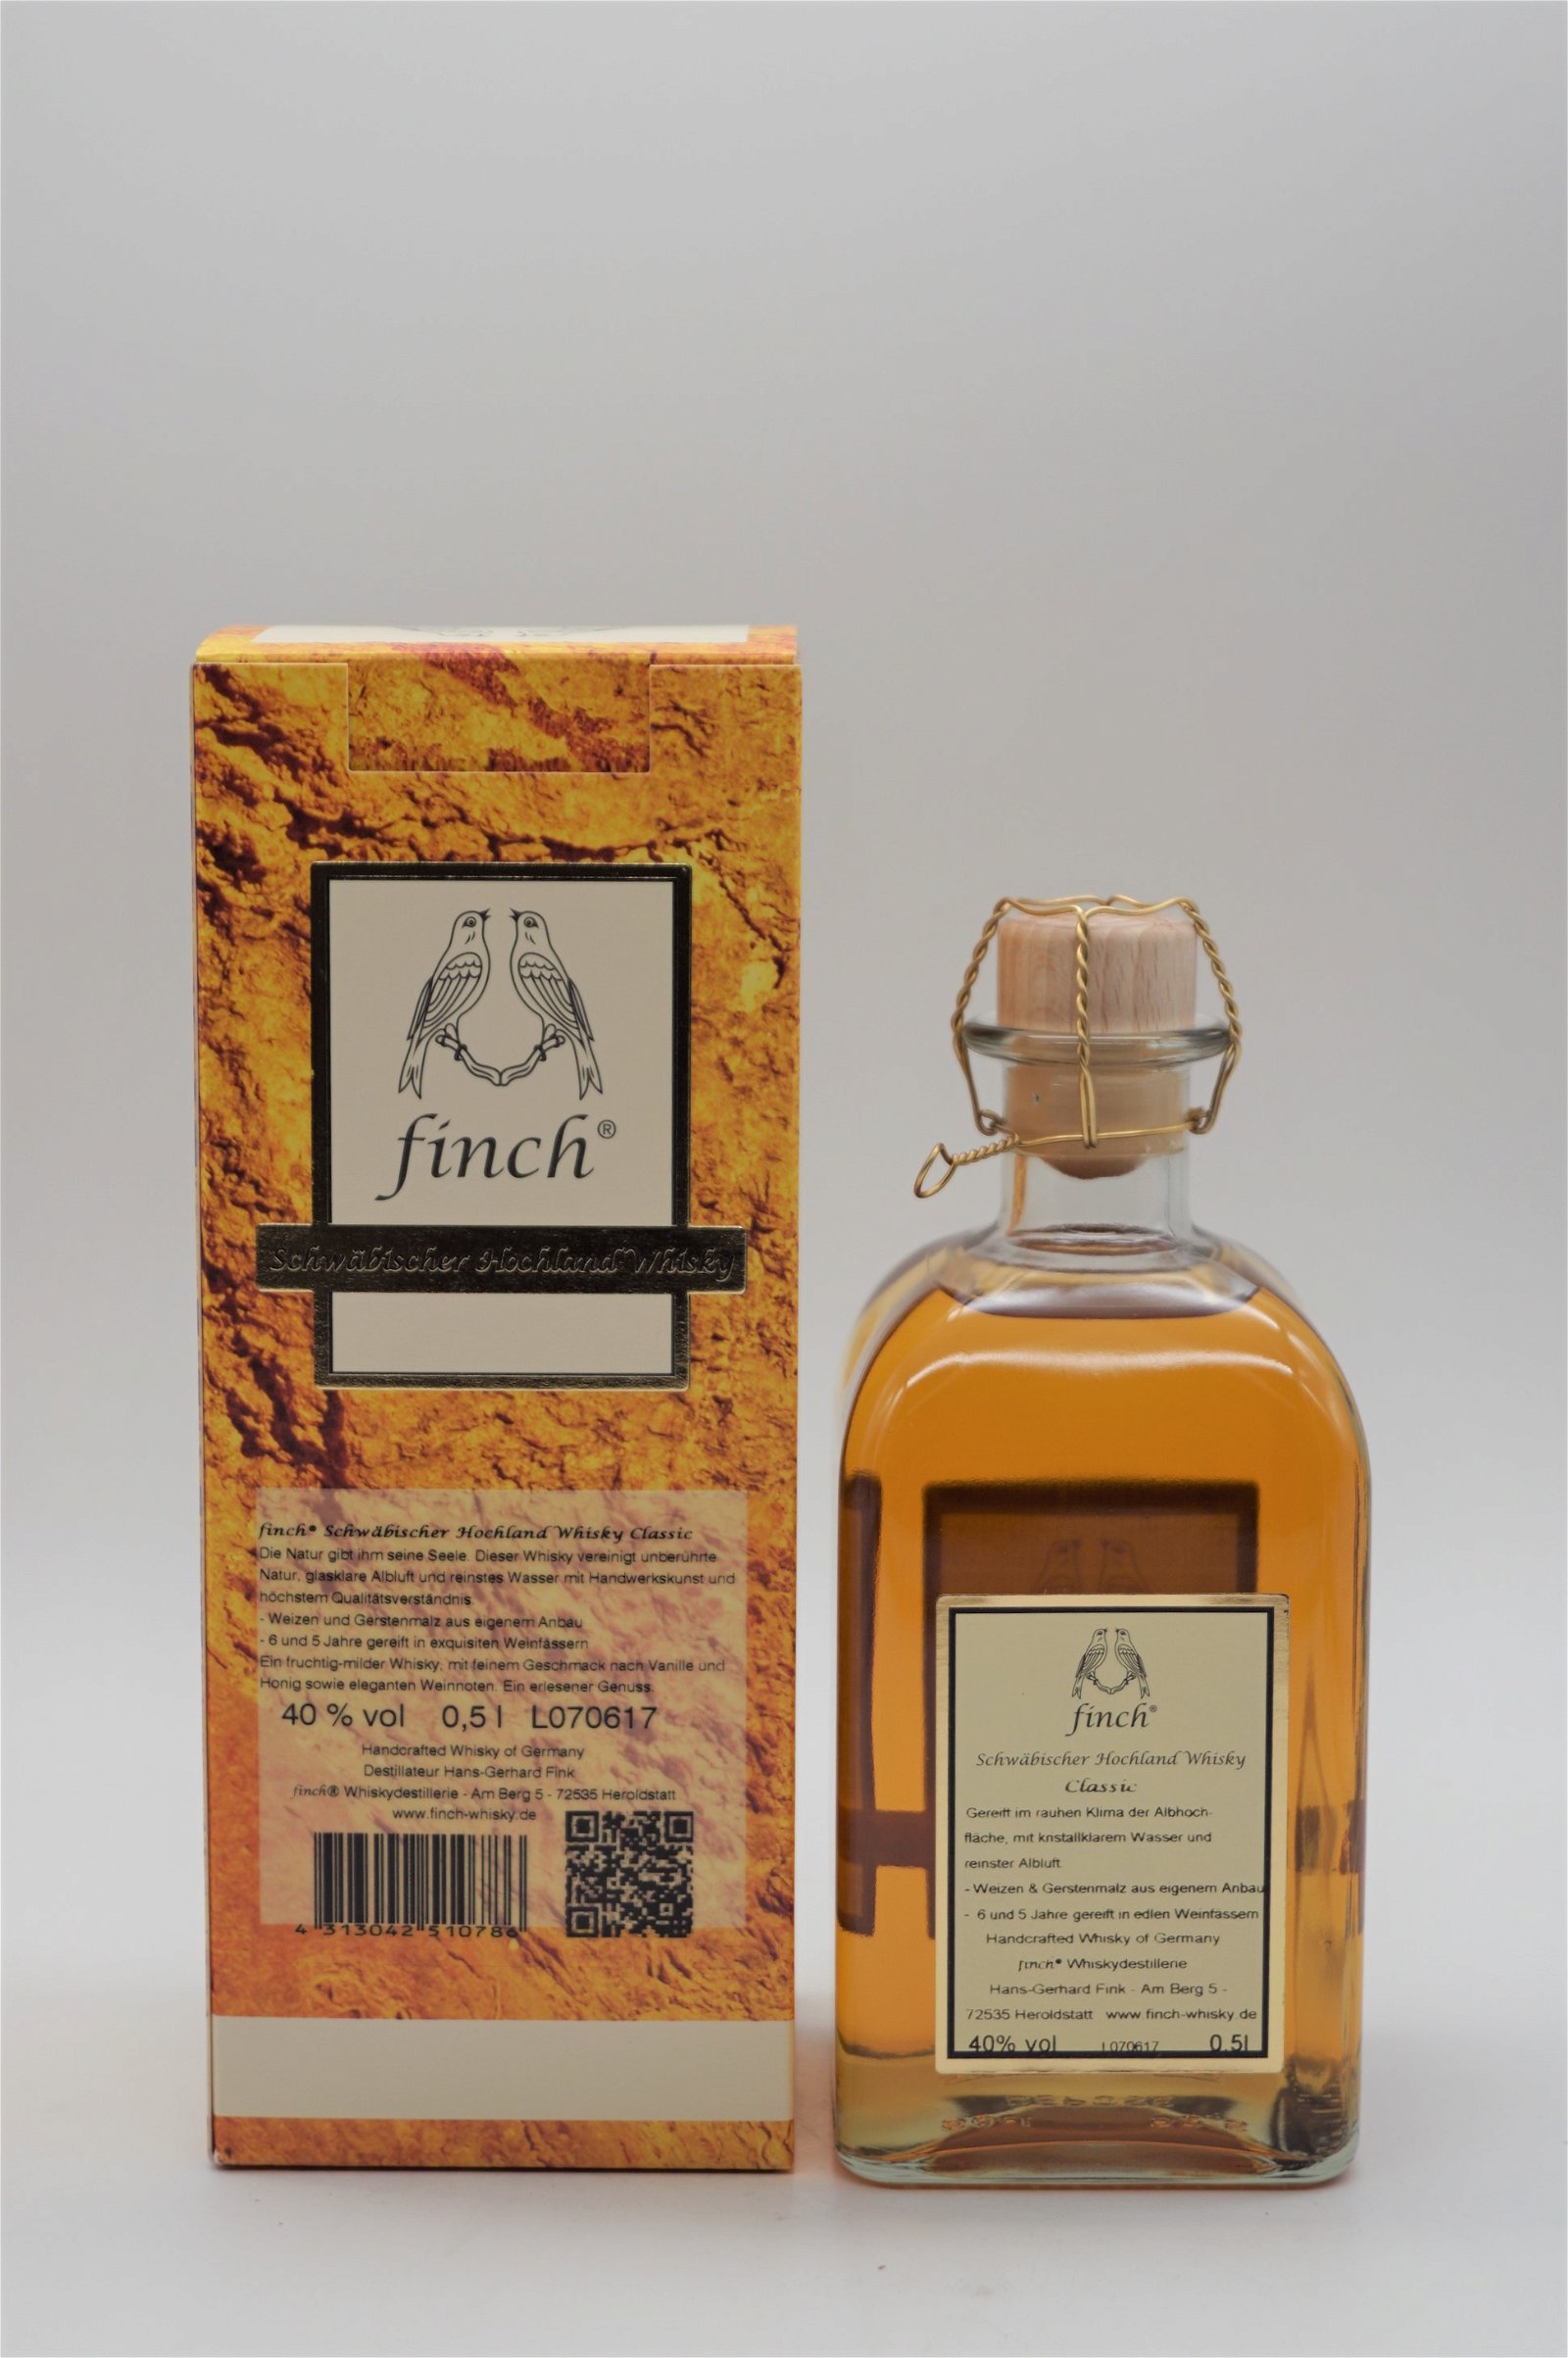 Finch Classic Schwäbischer Hochland Whisky